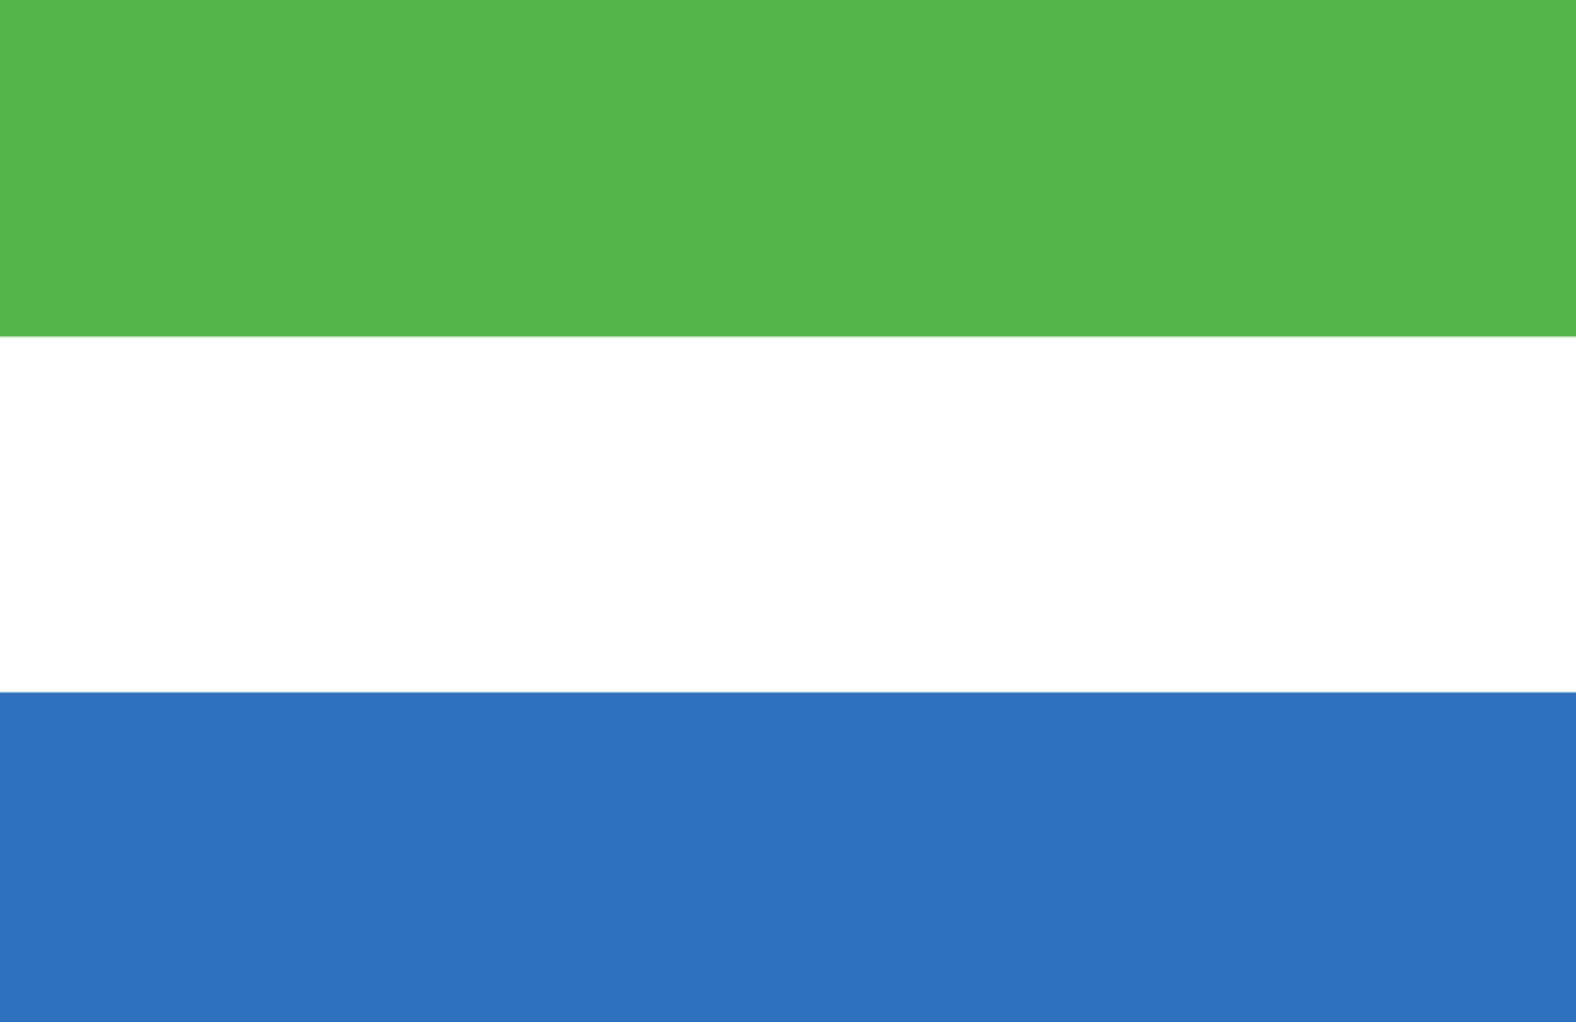 Sierra Leon - proxy